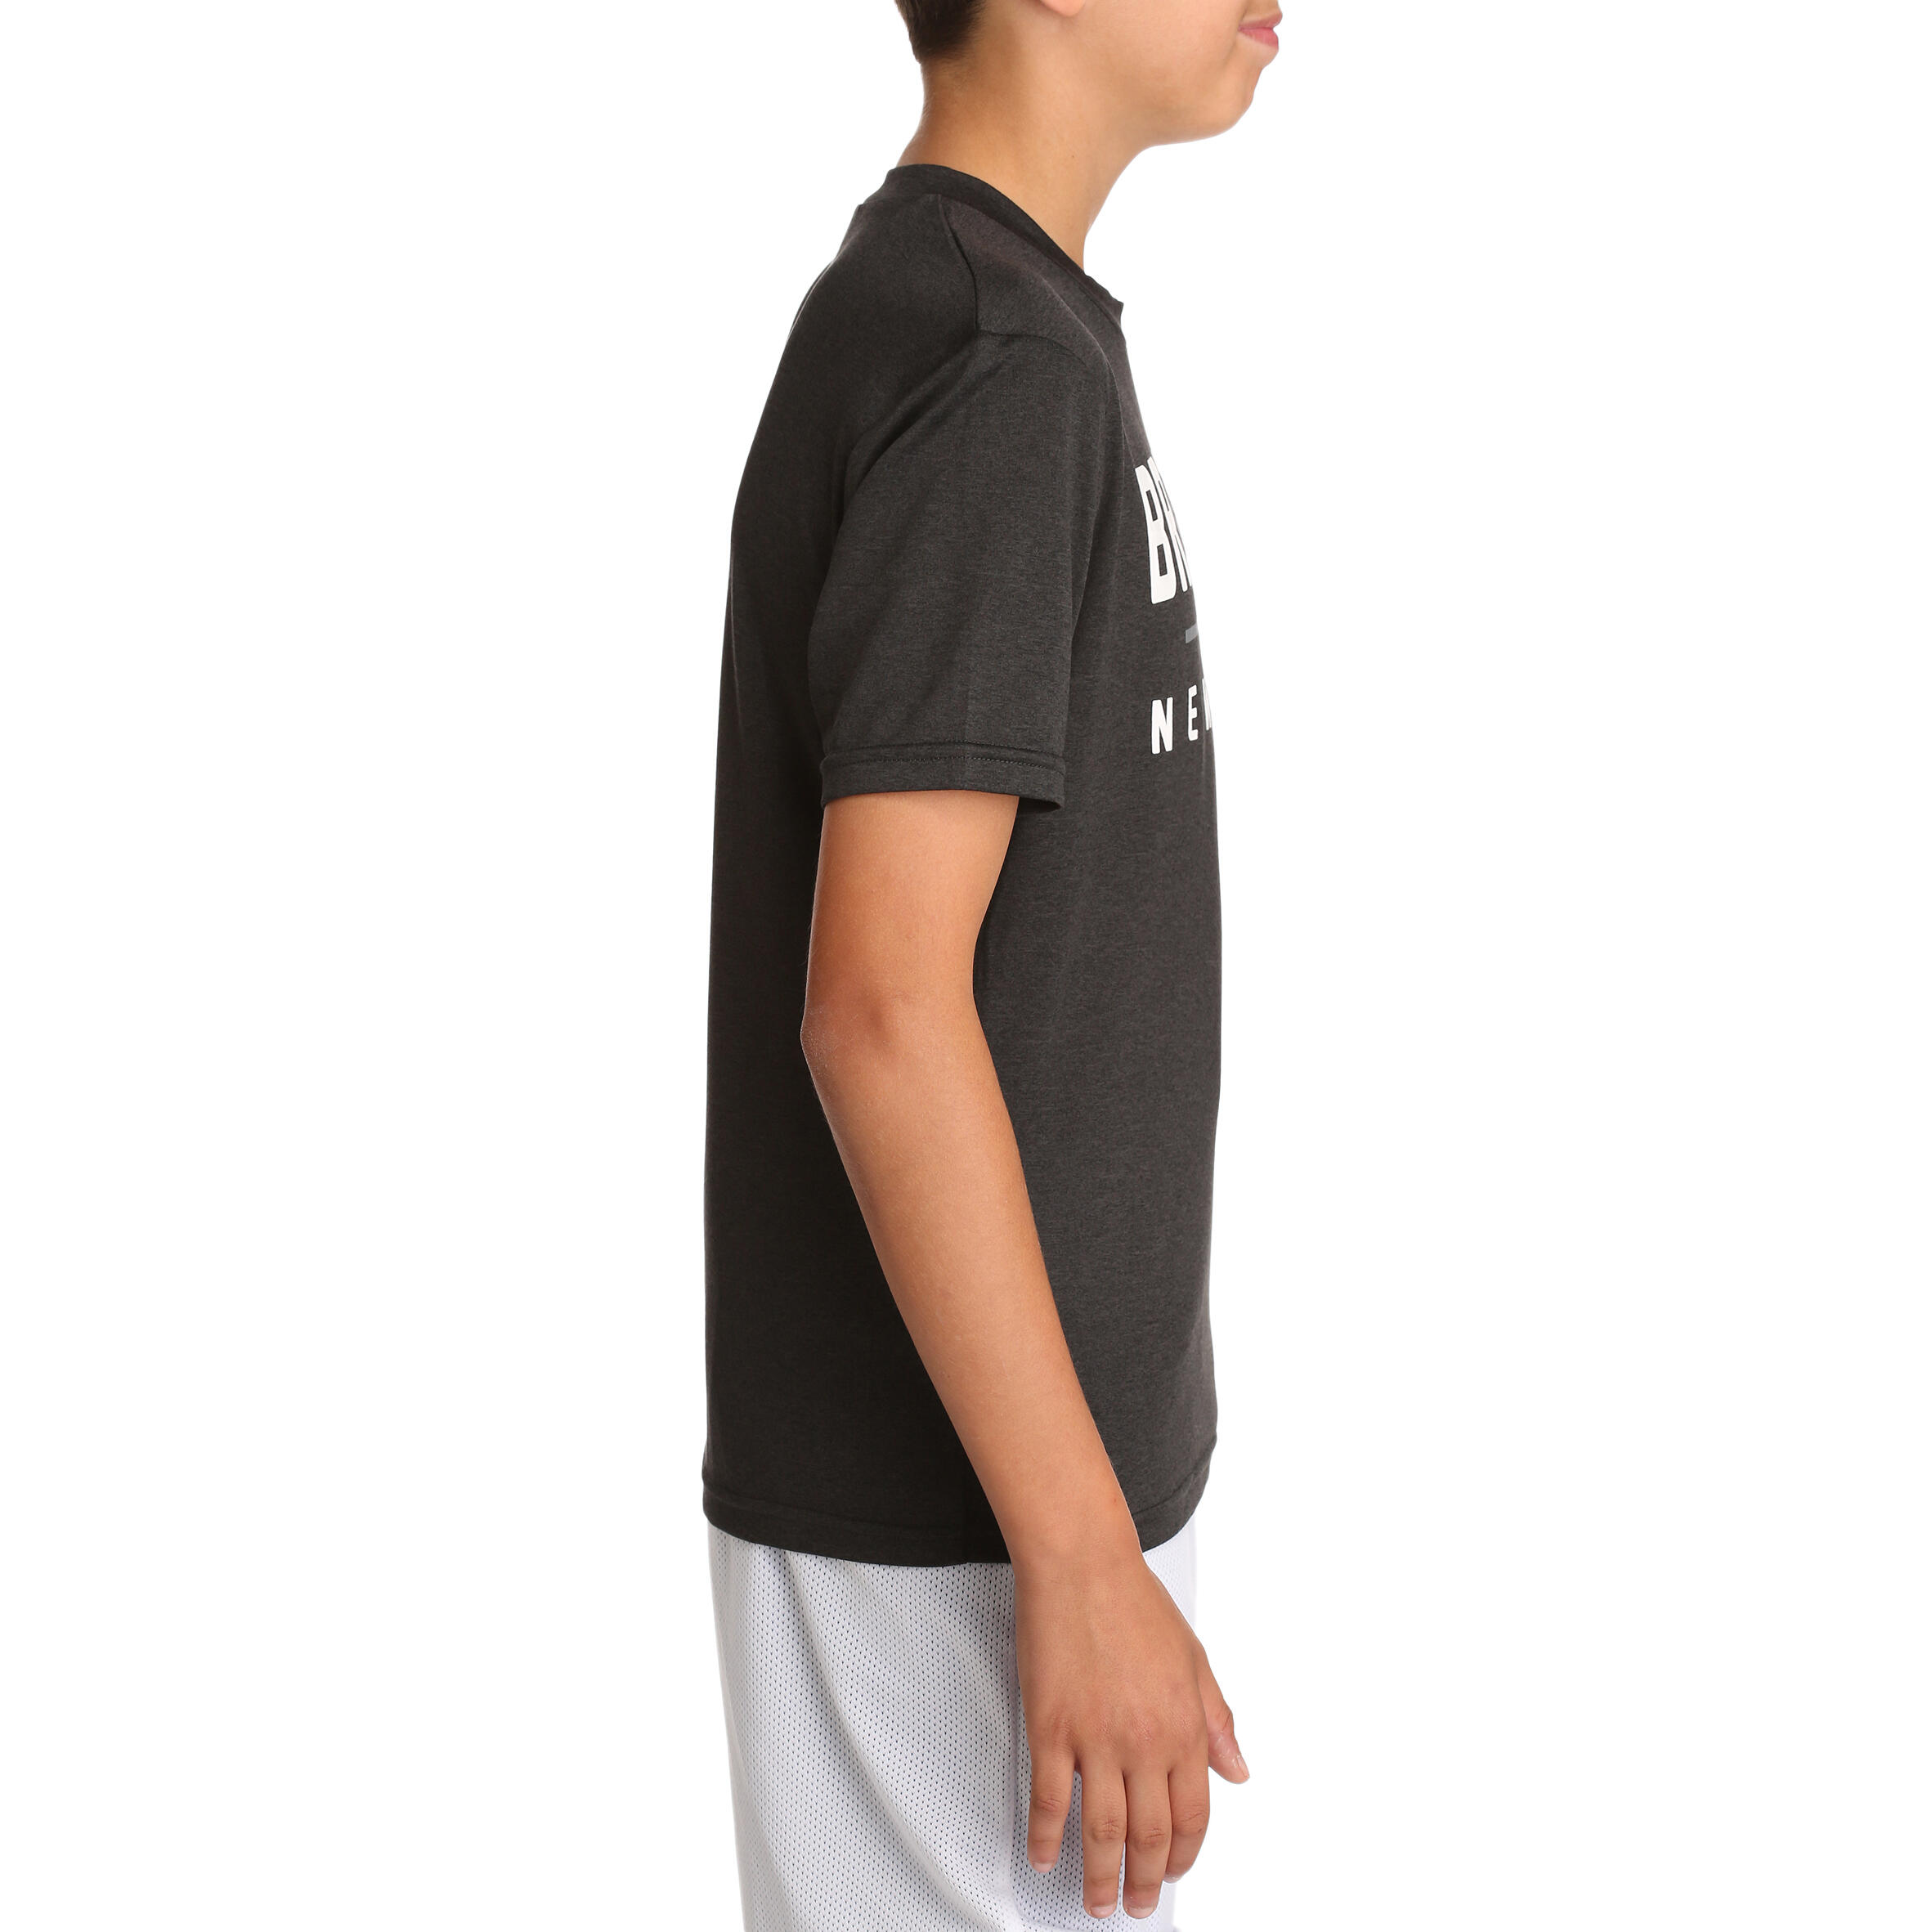 Fast Brooklyn Kids Basketball T-shirt - Black 4/6